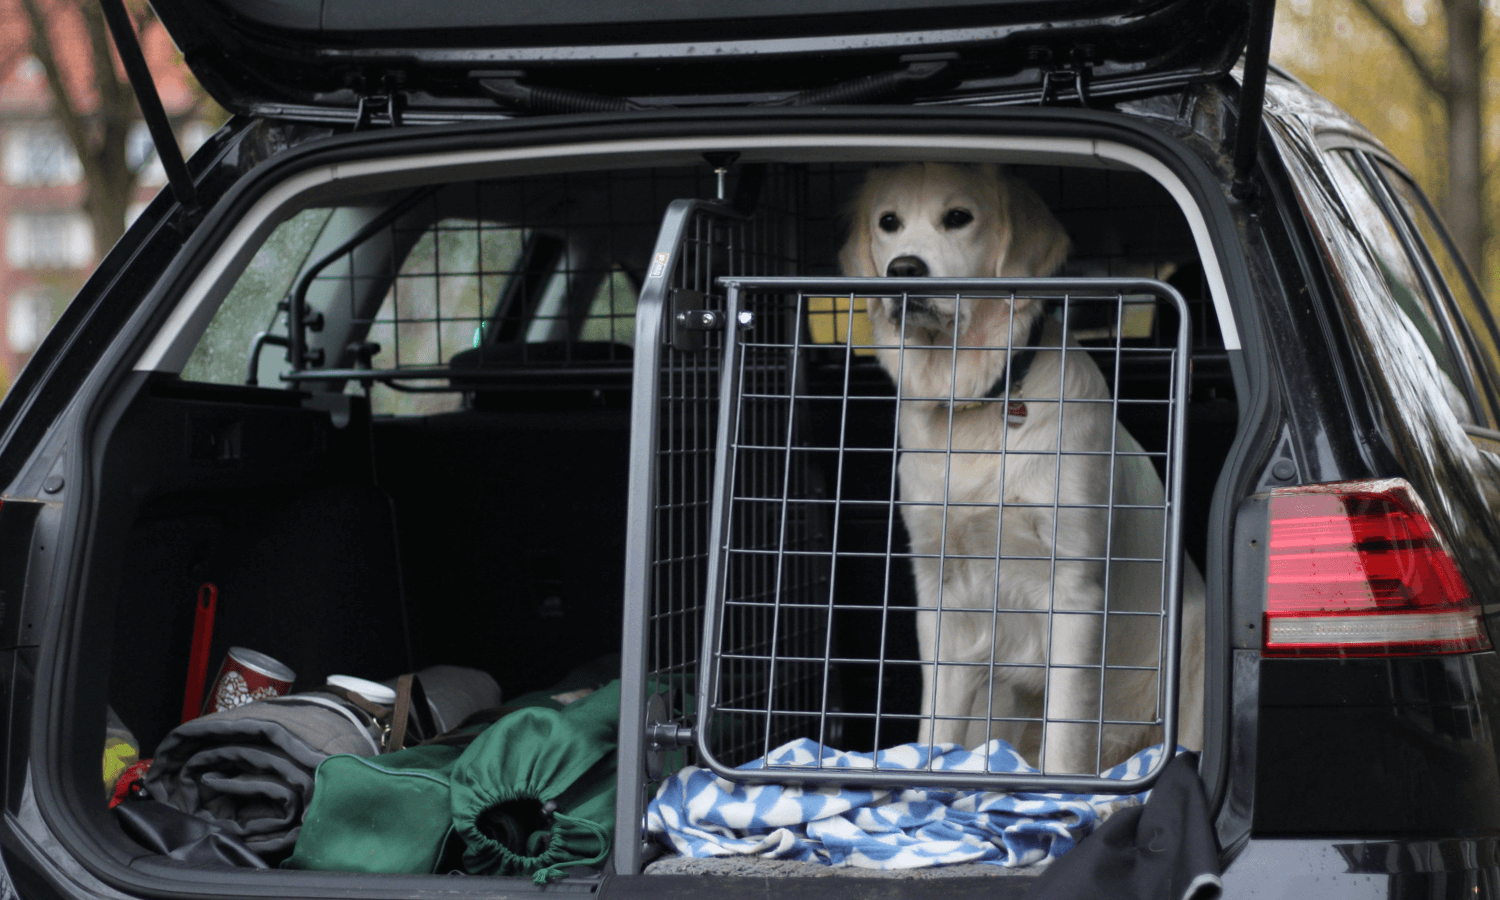 Travall fertigt Heckgitter für Hunde im Auto. Man kann entweder eine oder zwei Gittertüren nachrüsten. © Travall